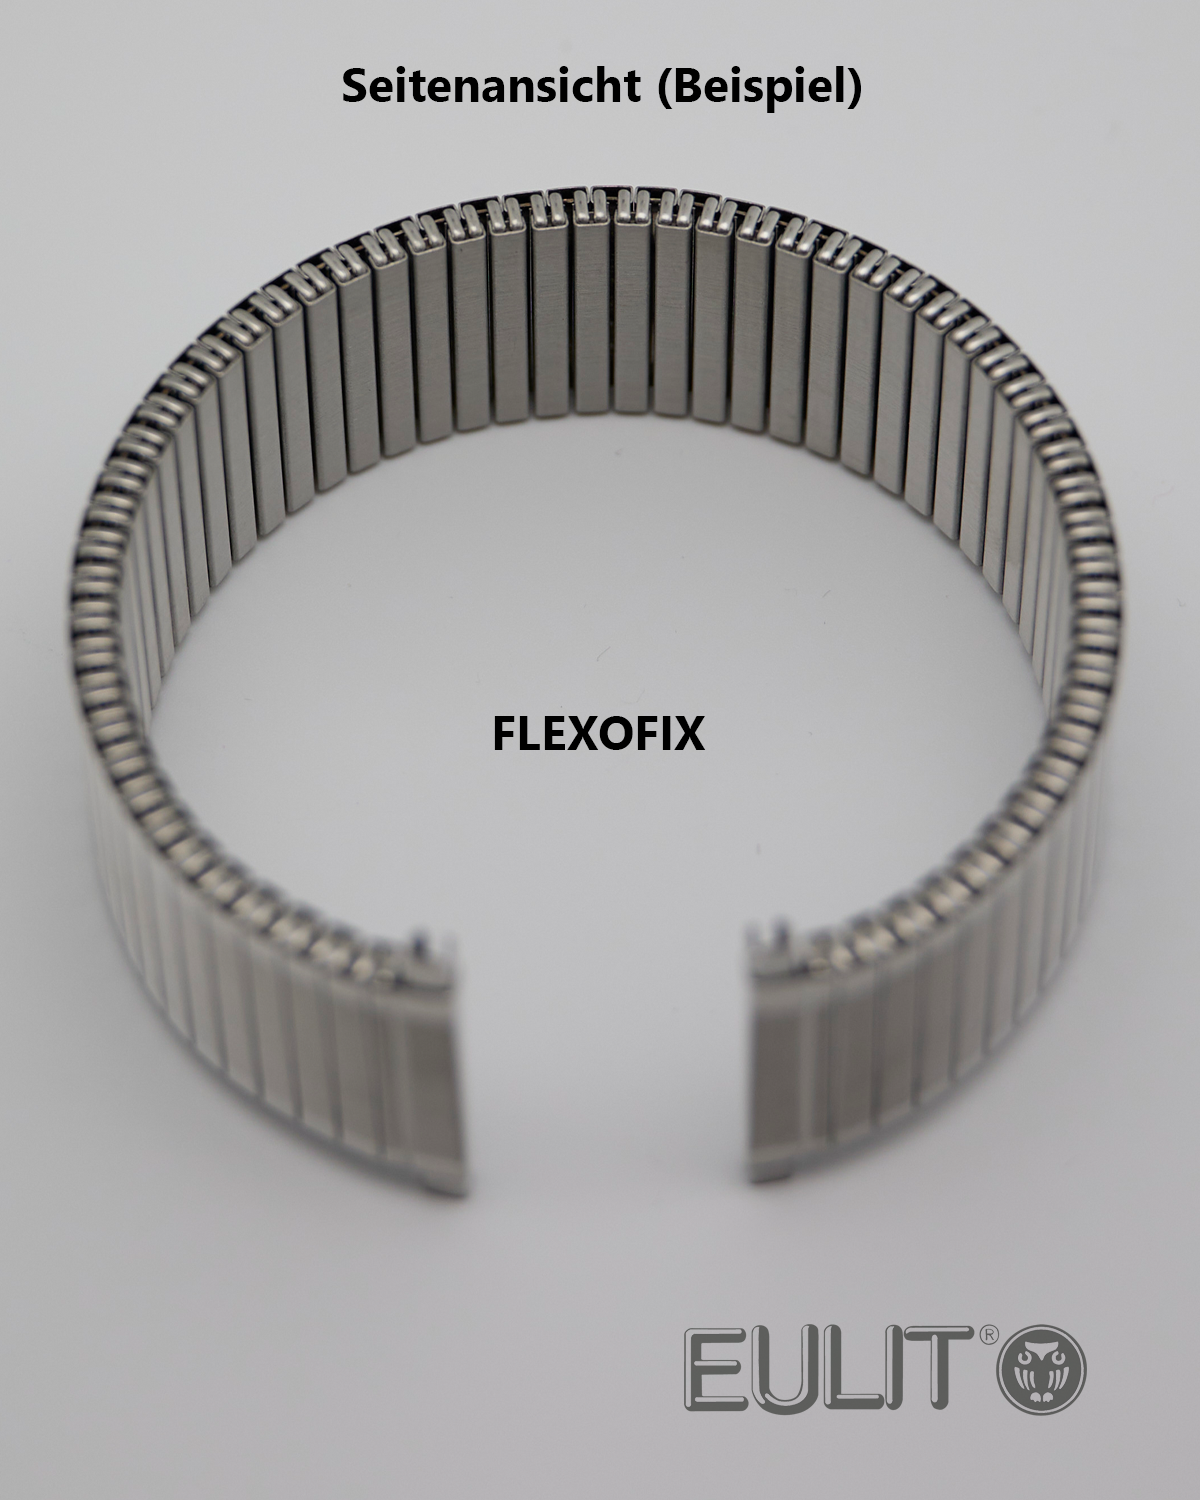 76-410004 EULIT FLEXOFIX 18-20 mm Edelstahl